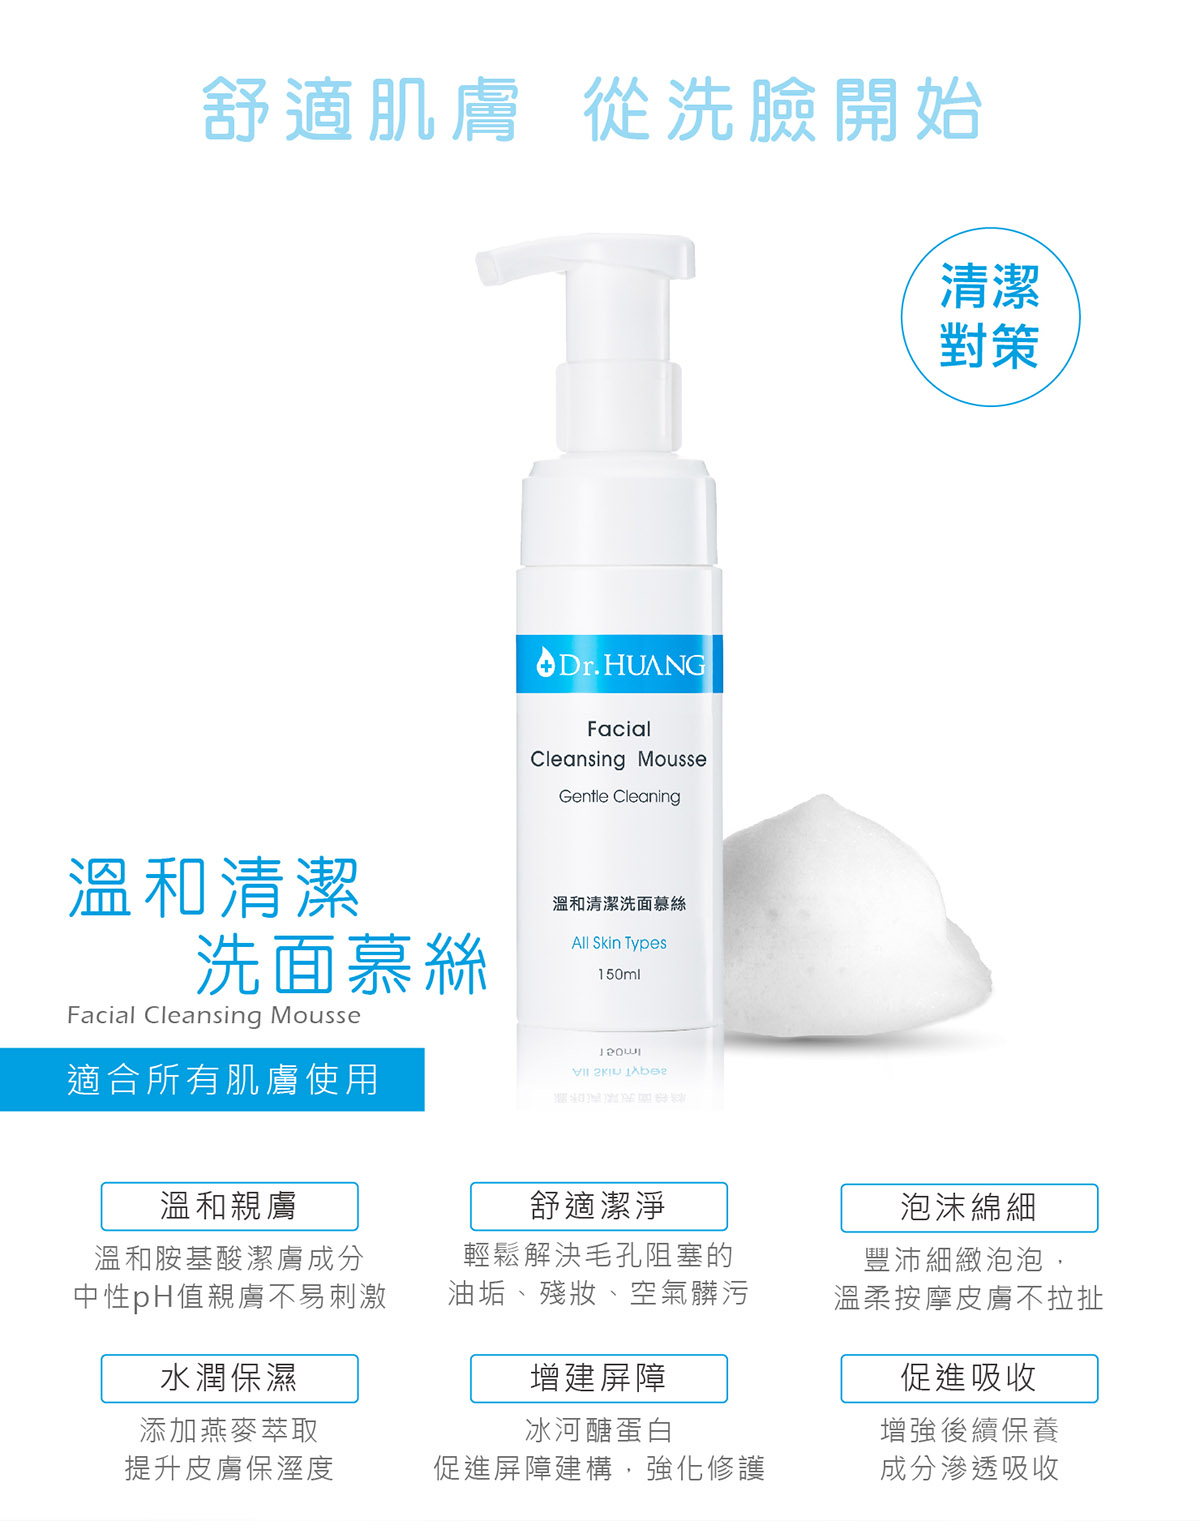 Dr.HUANG保濕系列溫和清潔洗面慕絲適合所有膚質溫和親膚舒適潔淨泡沫綿細水潤保濕增加屏障促進吸收